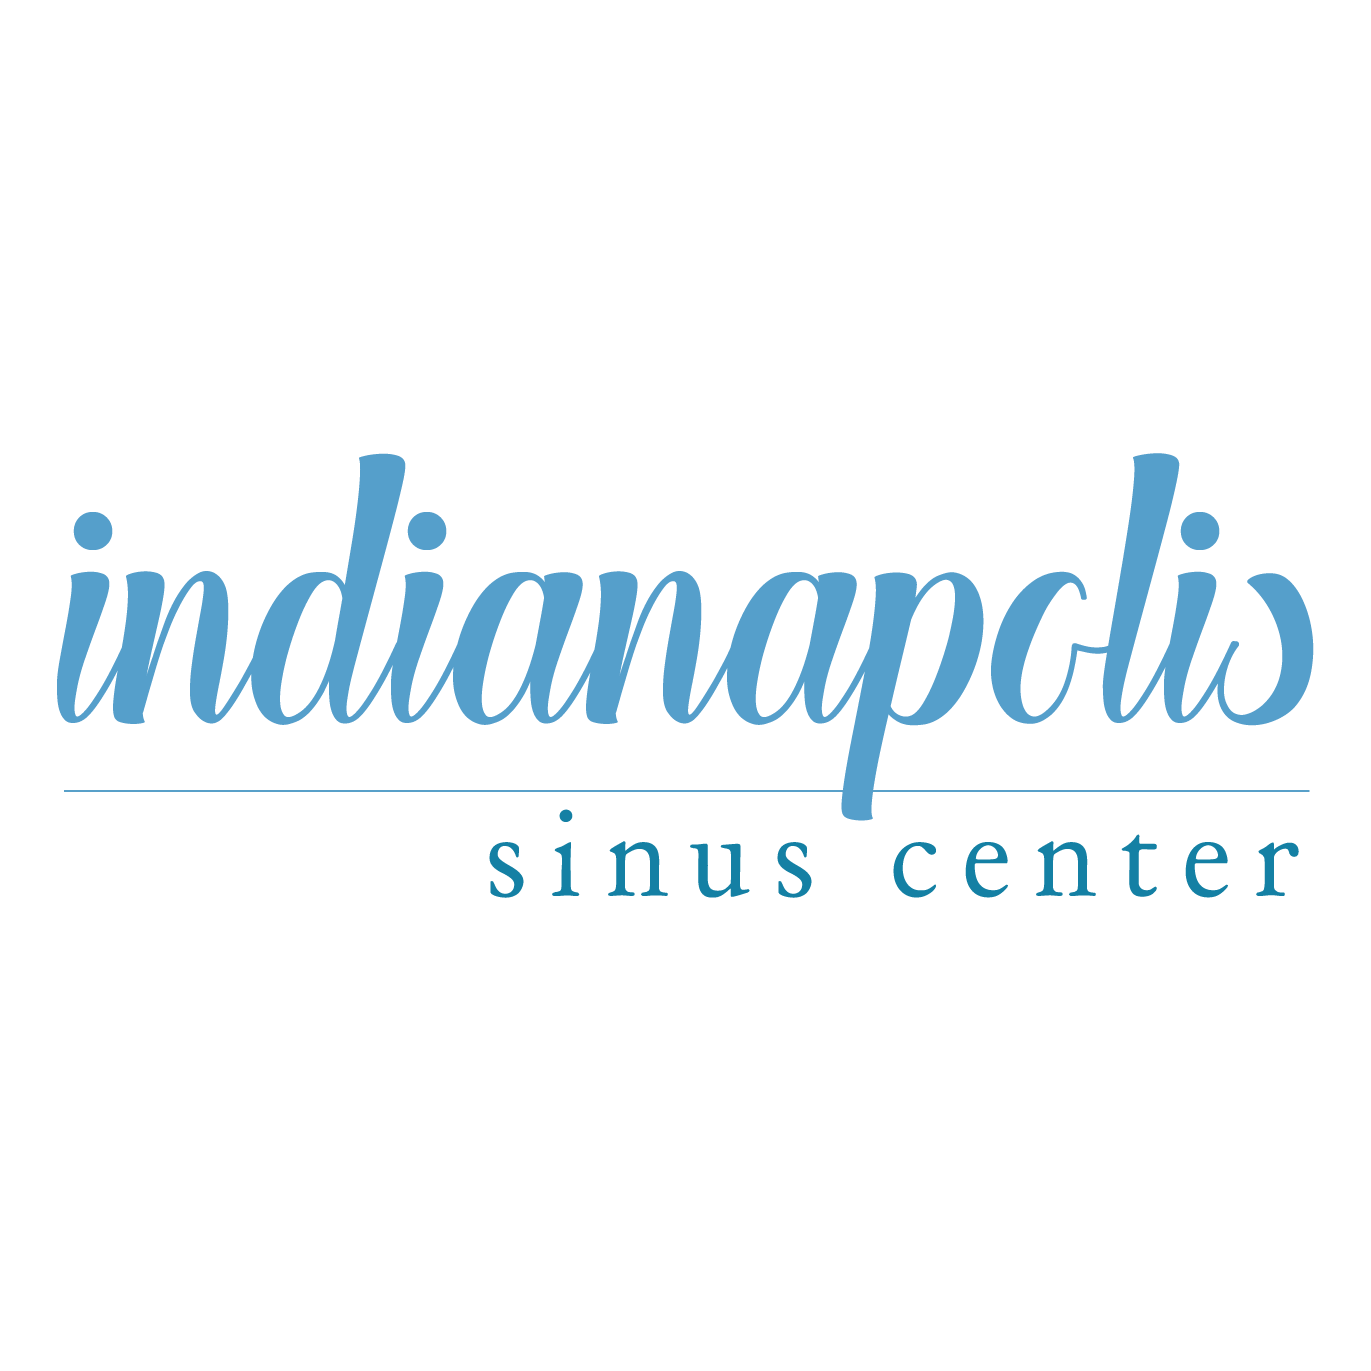 Indianapolis Sinus Center Logo